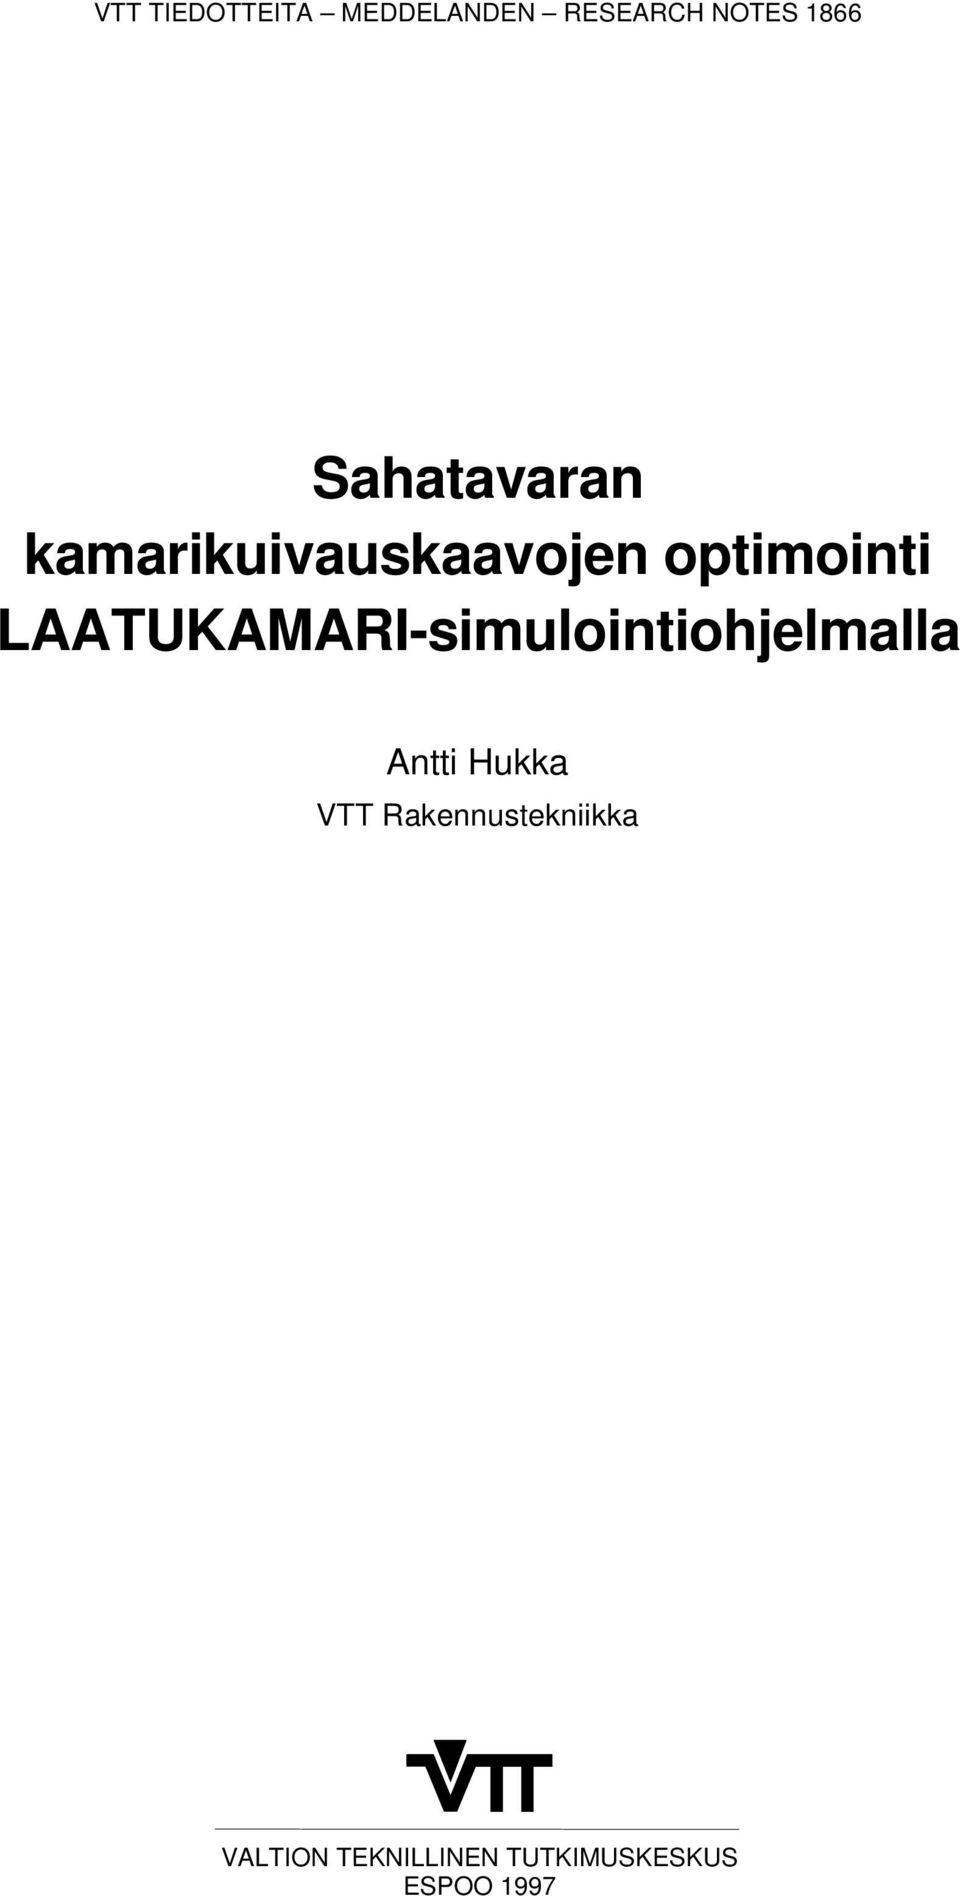 LAATUKAMARI-simulointiohjelmalla Antti Hukka VTT